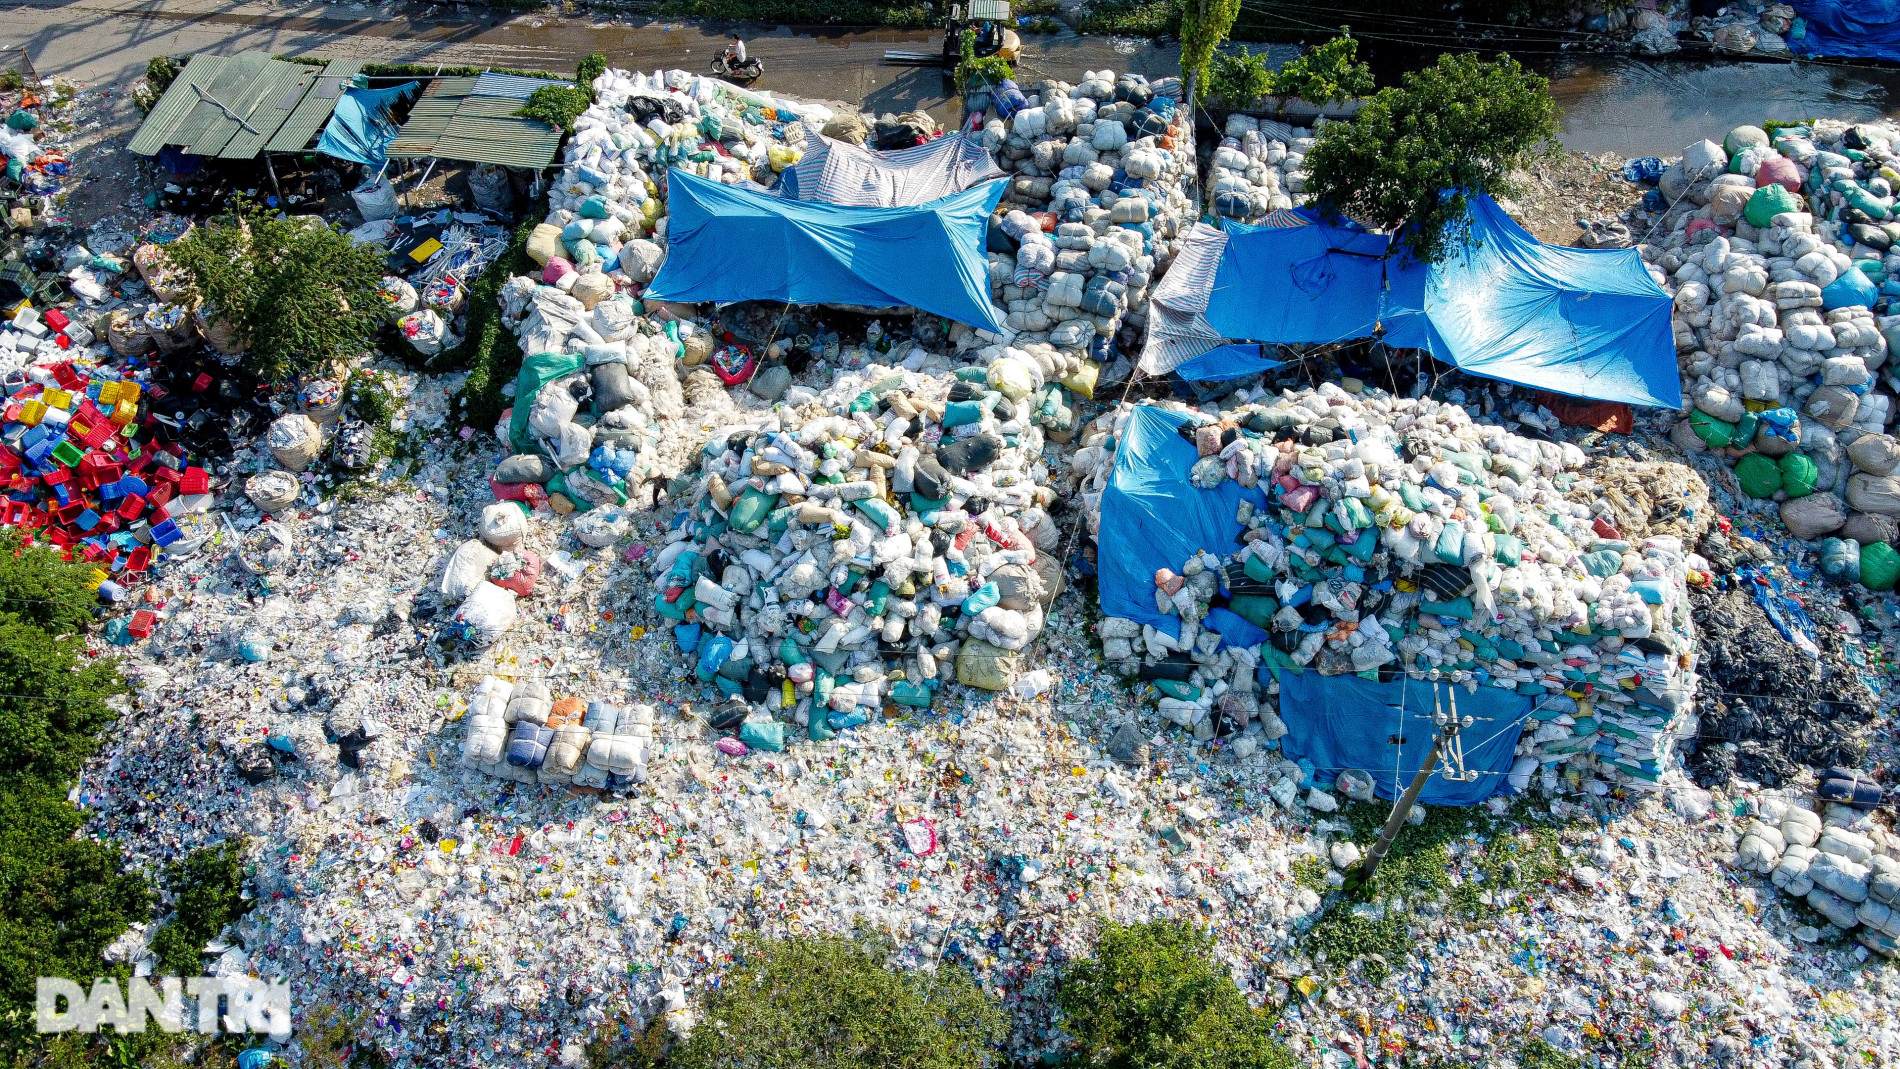 Cận cảnh đại công trường xay rác, người dân quanh năm ăn nhựa, uống nilon - 2